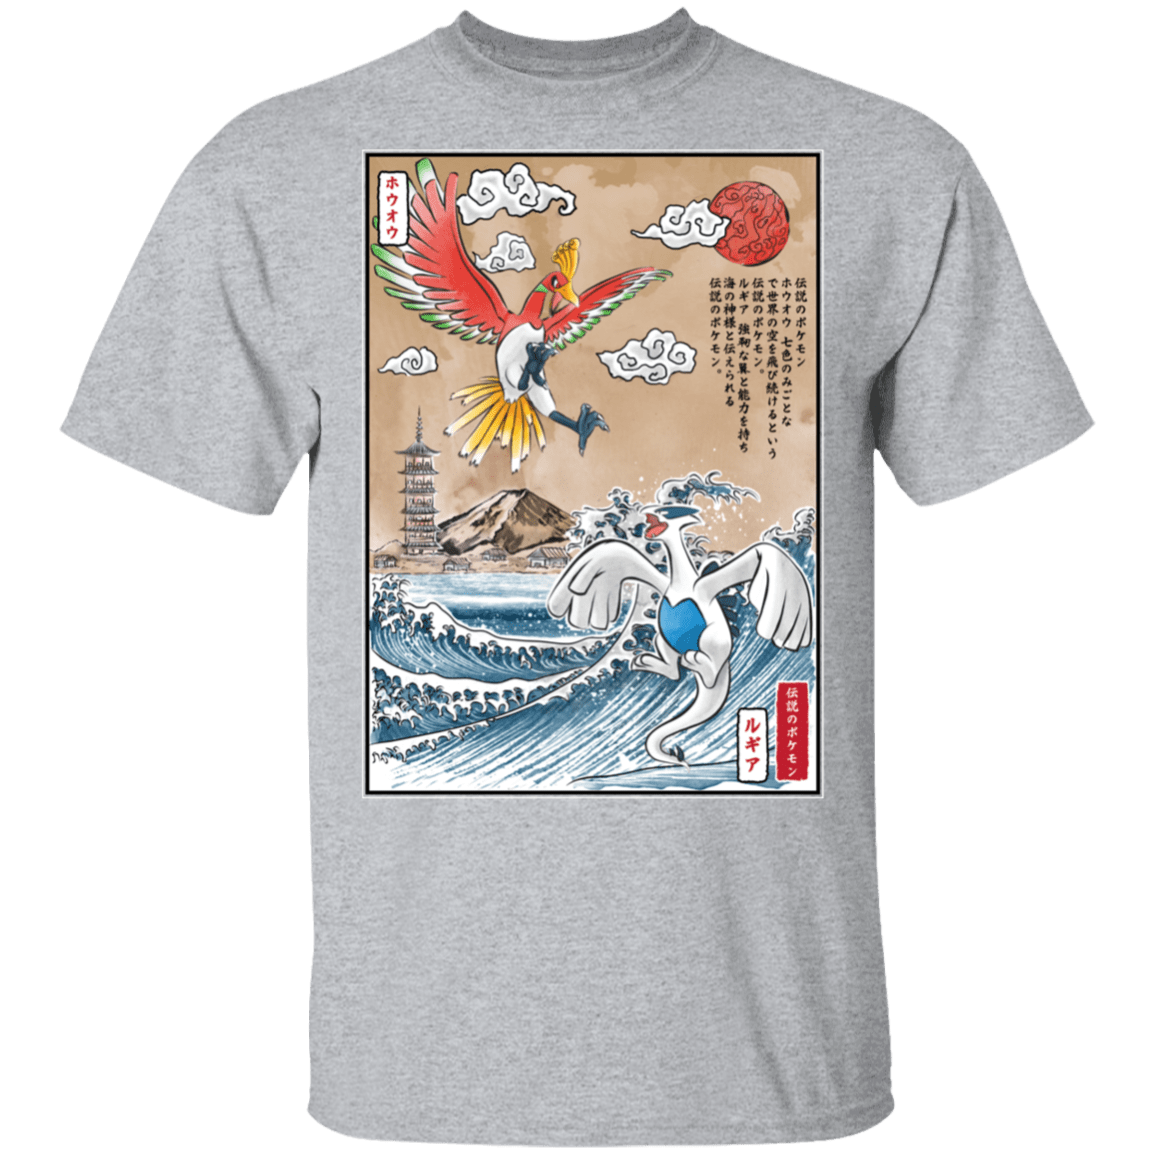 Legendary Battle T-Shirt